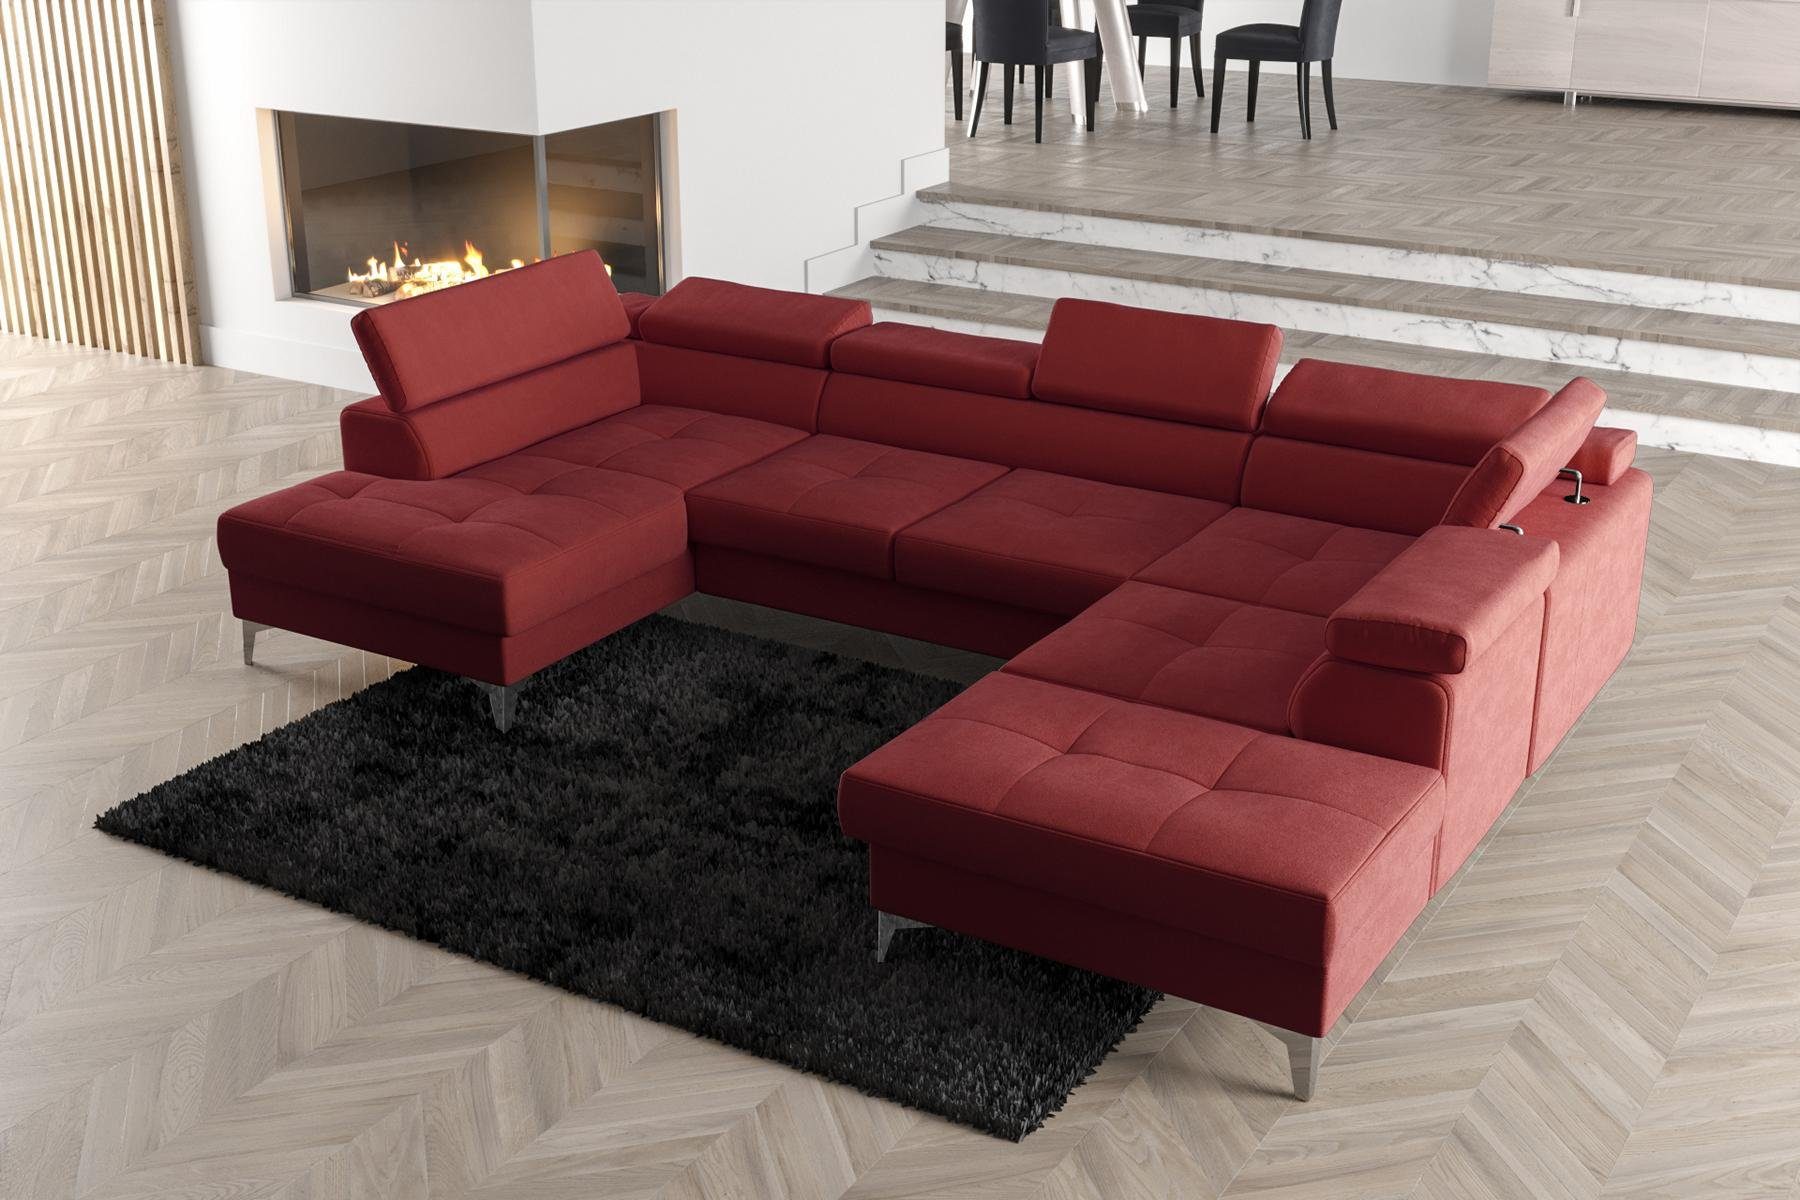 JVmoebel Ecksofa Modernes Design Polsterung Couch Wohnzimmer Ecksofa U-Form, Made in Europe Rot